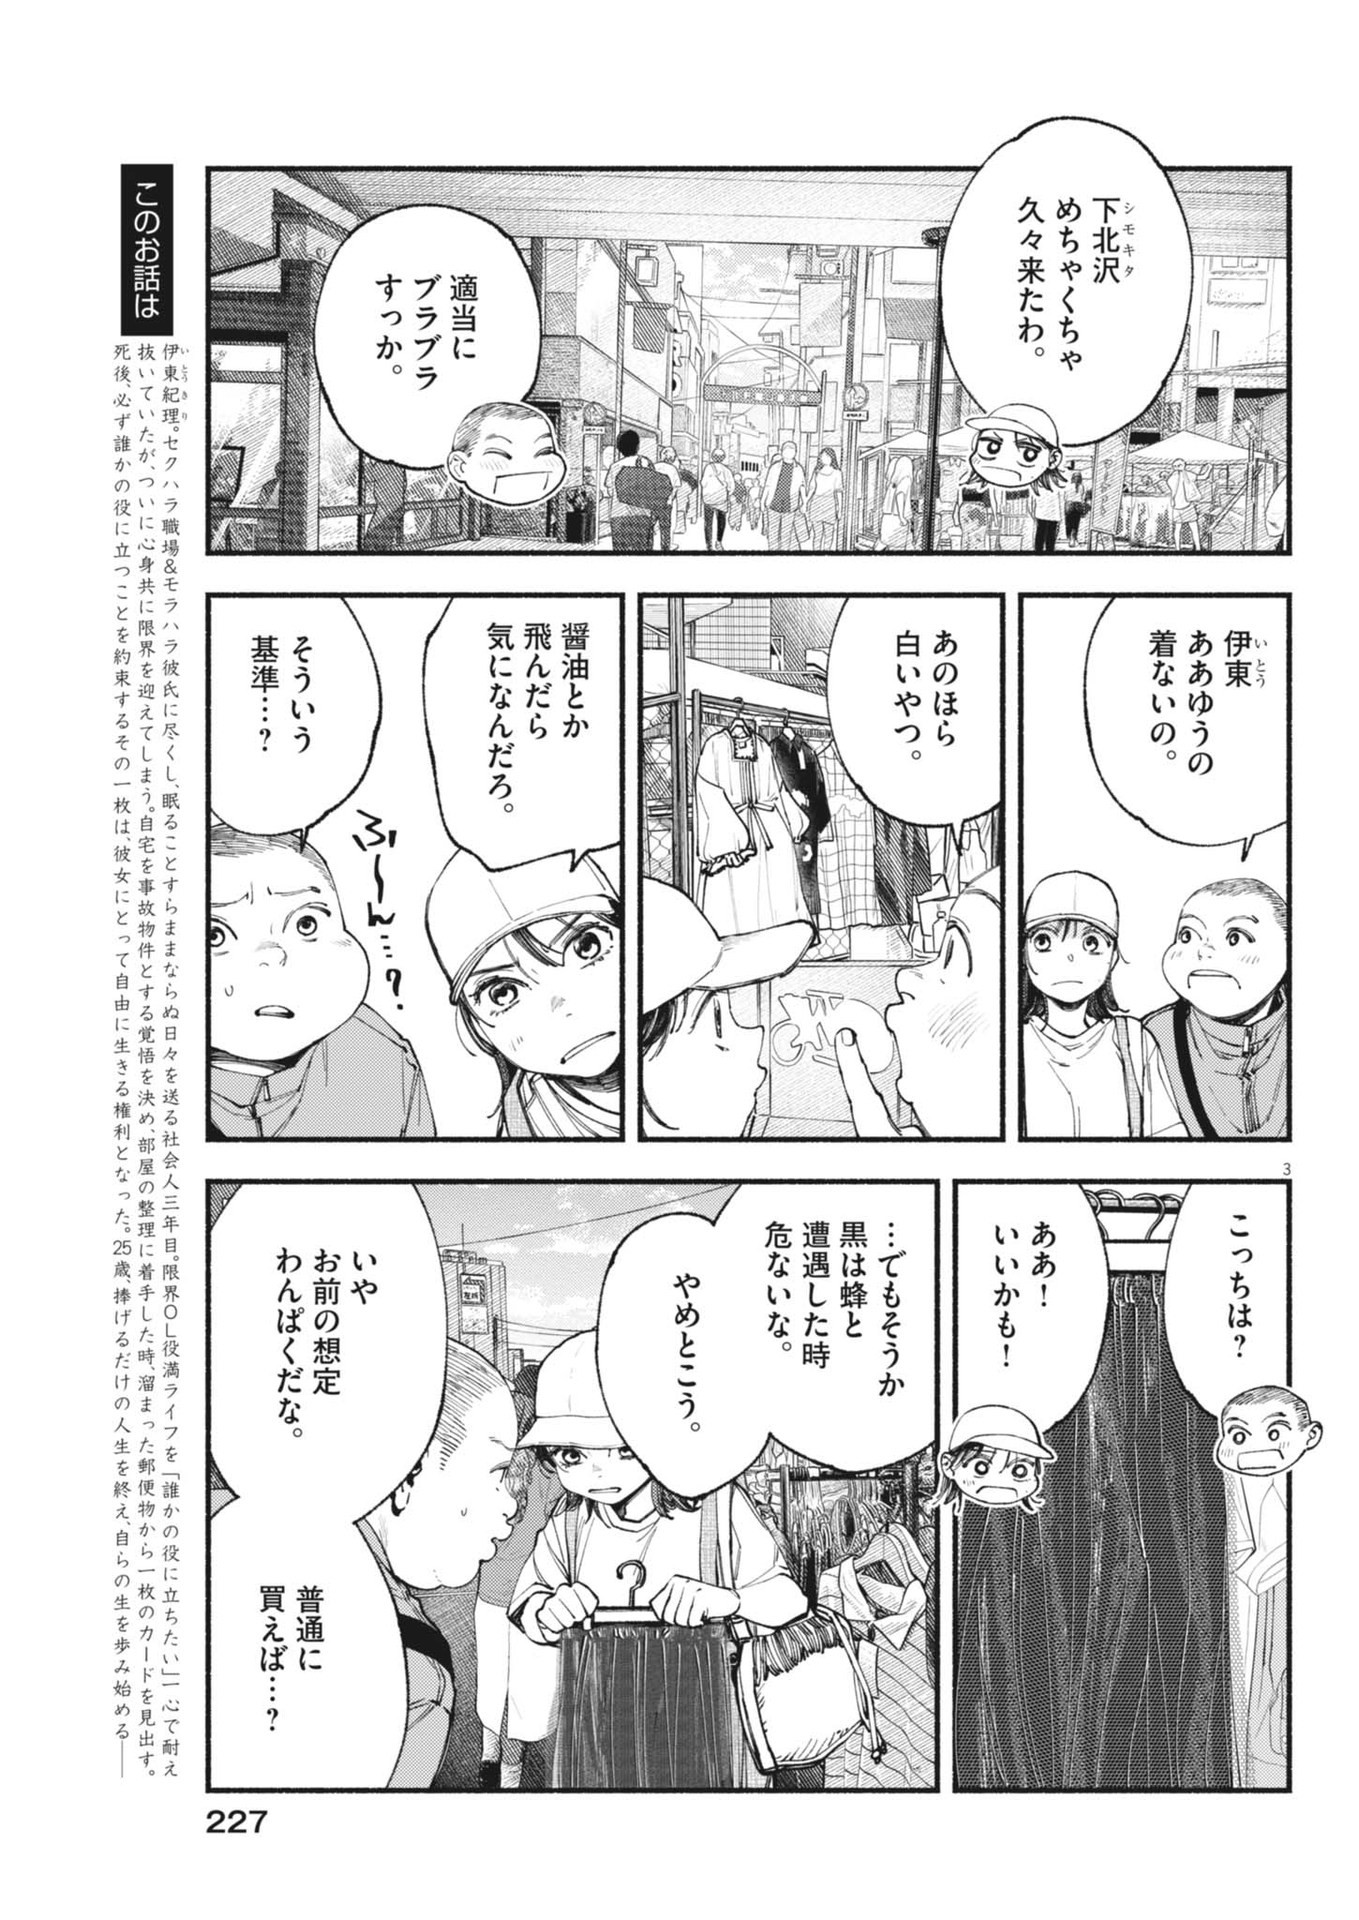 Konoyo wa Tatakau Kachi ga Aru  - Chapter 27 - Page 3